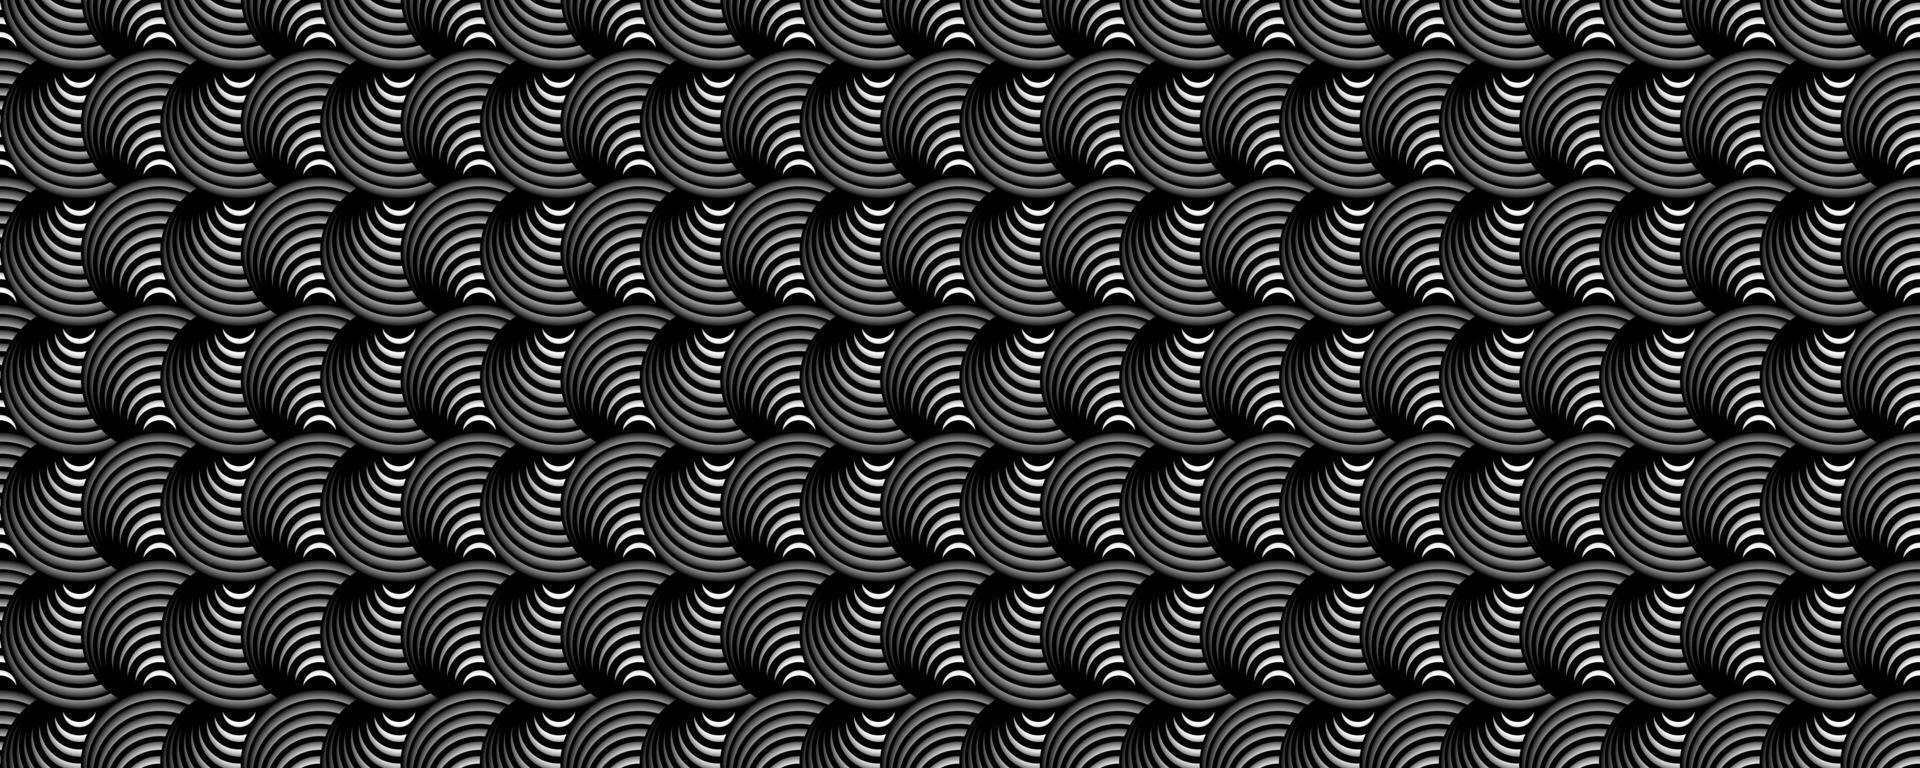 motif optique circulaire sombre, fond géométrique monochrome vecteur